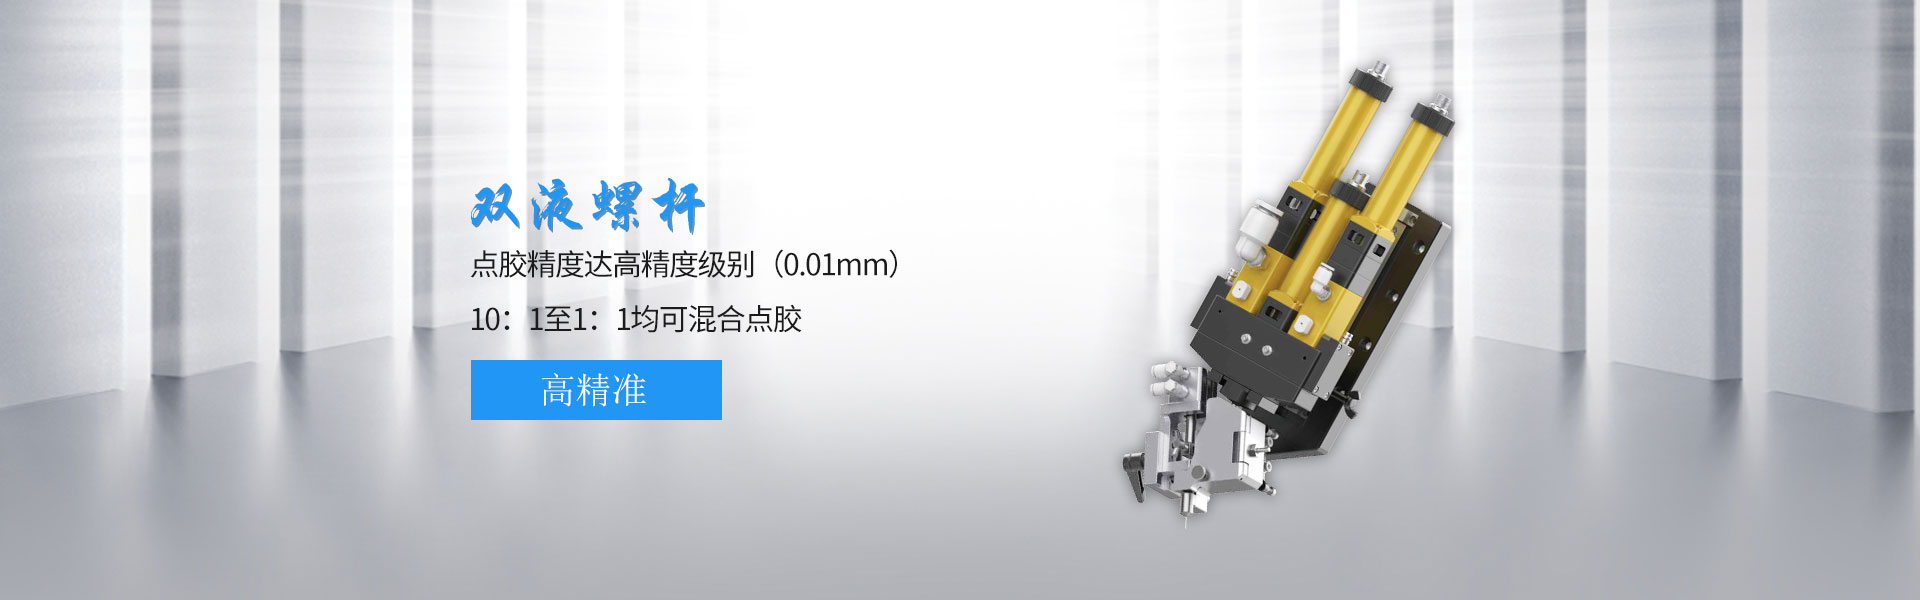 大包装双液螺杆阀  DL-500-深圳市润之鑫科技有限公司